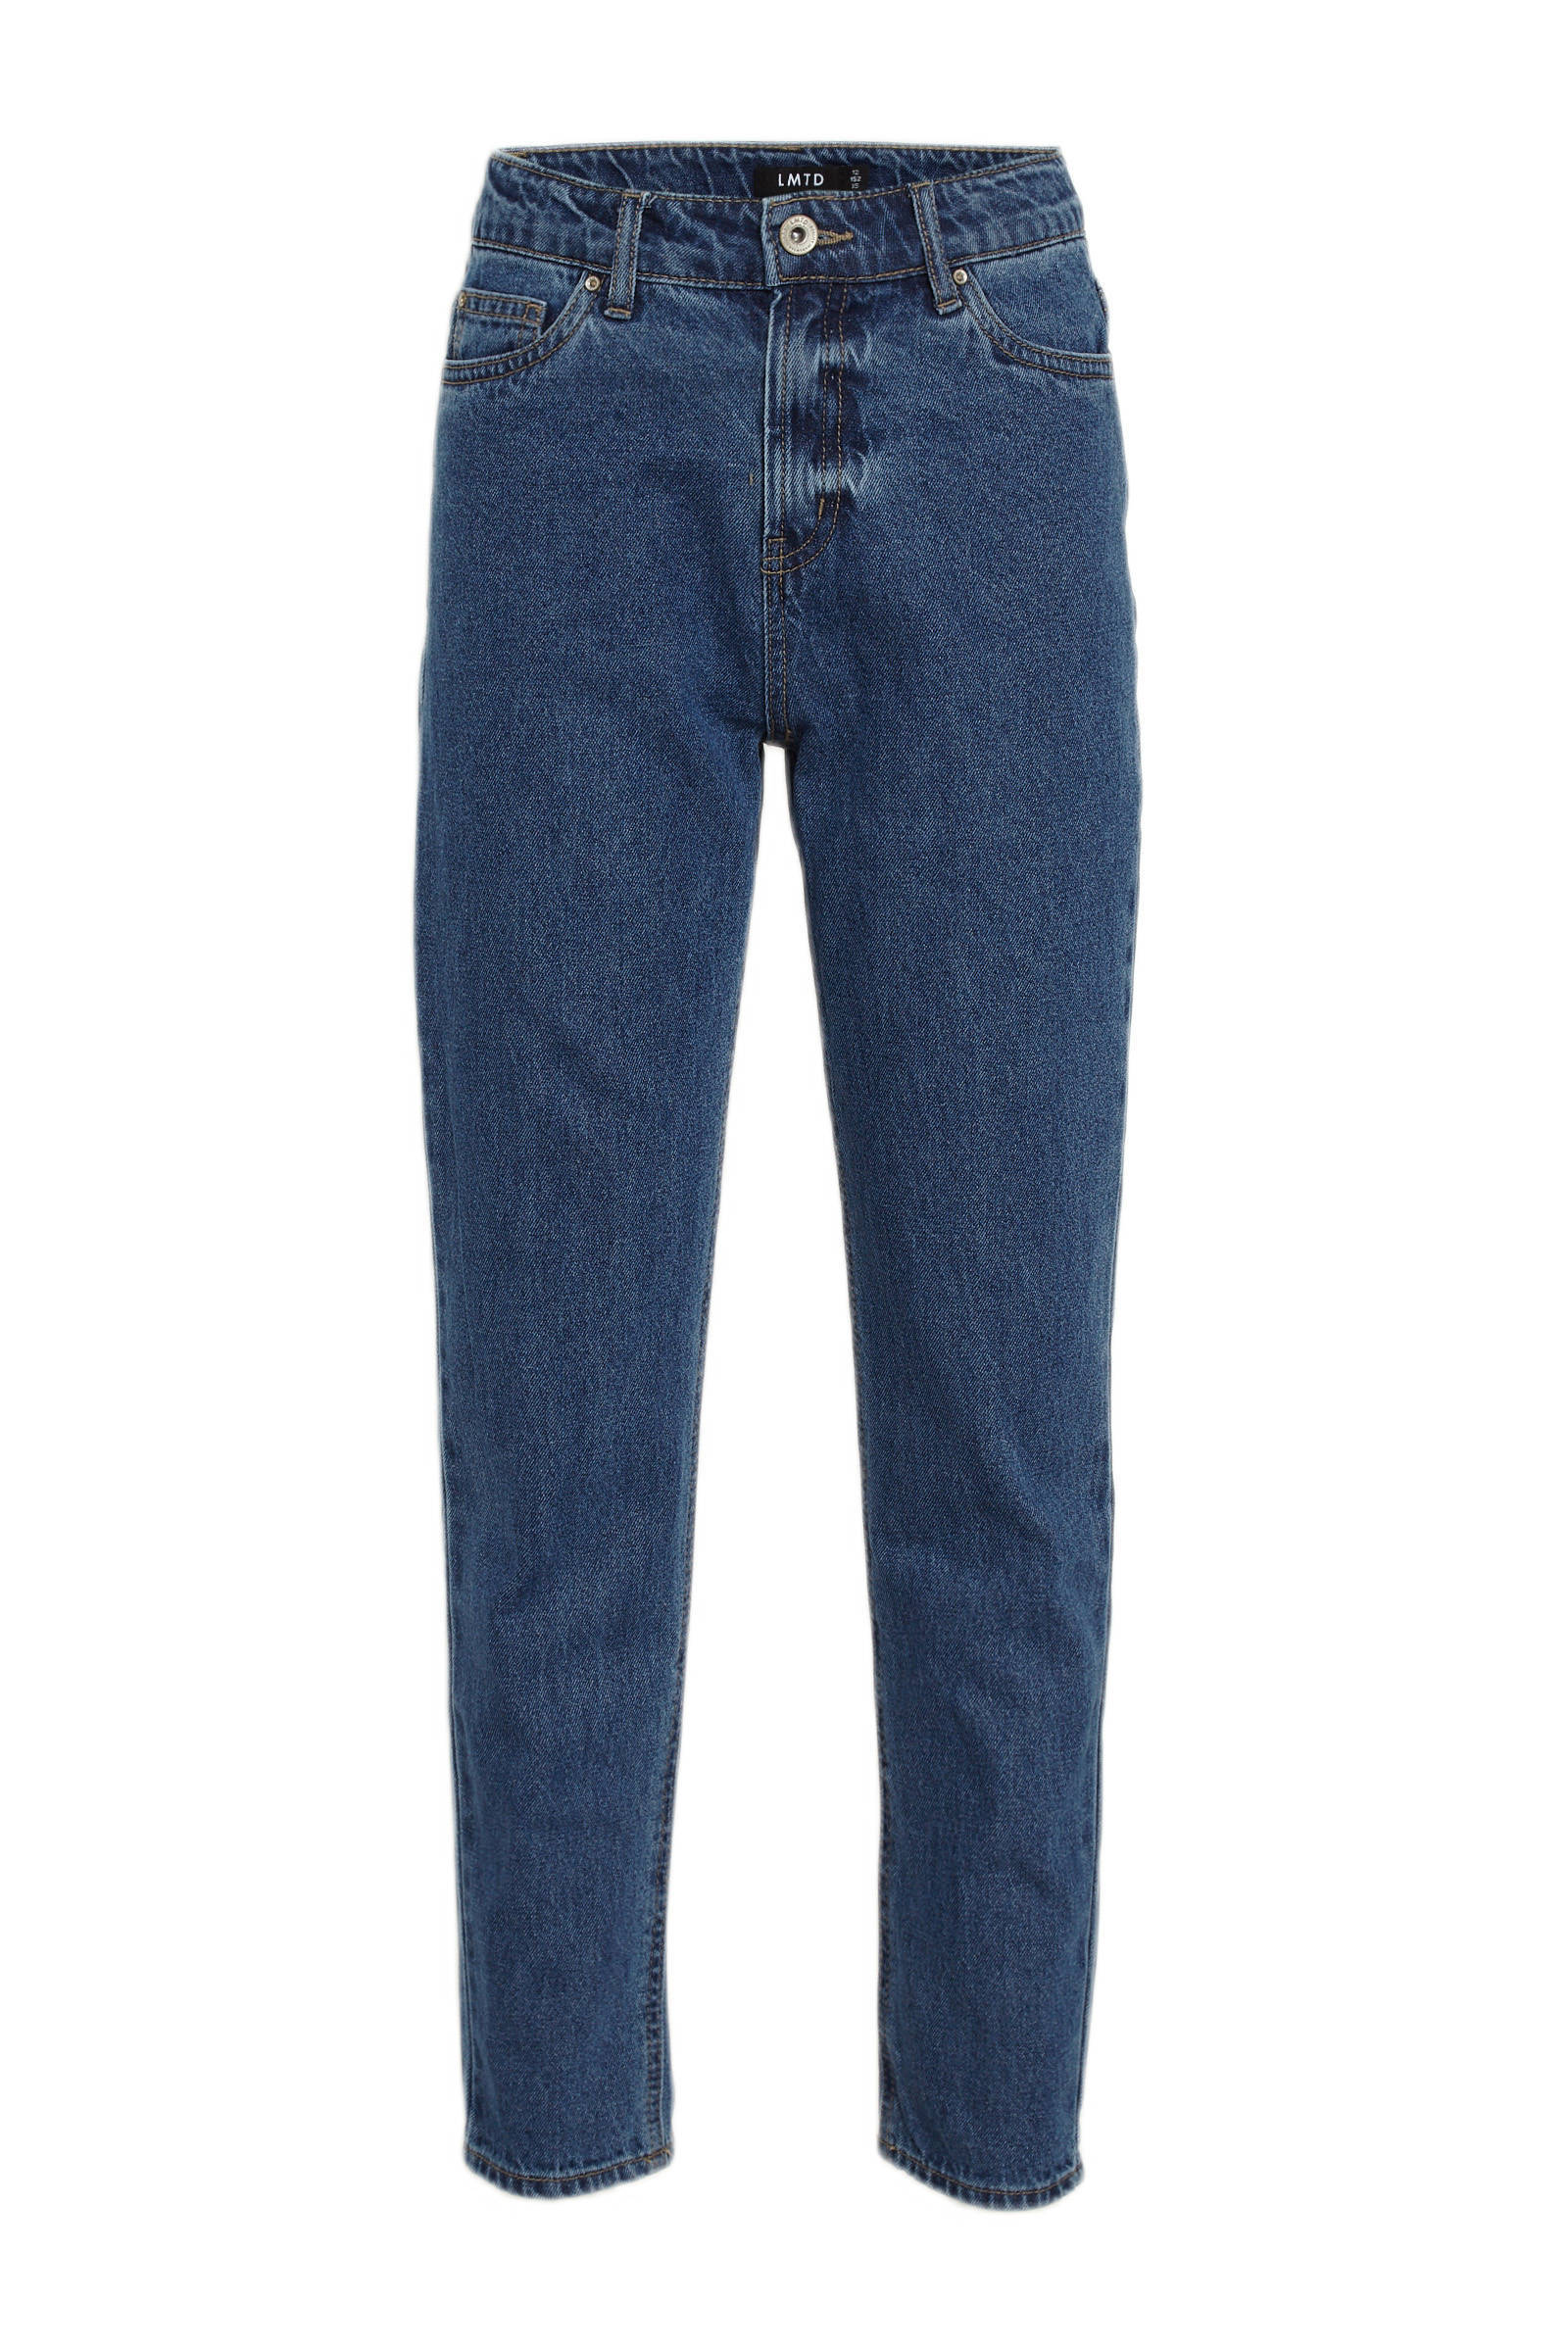 wehkamp Dames Kleding Broeken & Jeans Jeans Mom Jeans Mom jeans NLFRAVEN stonewashed 